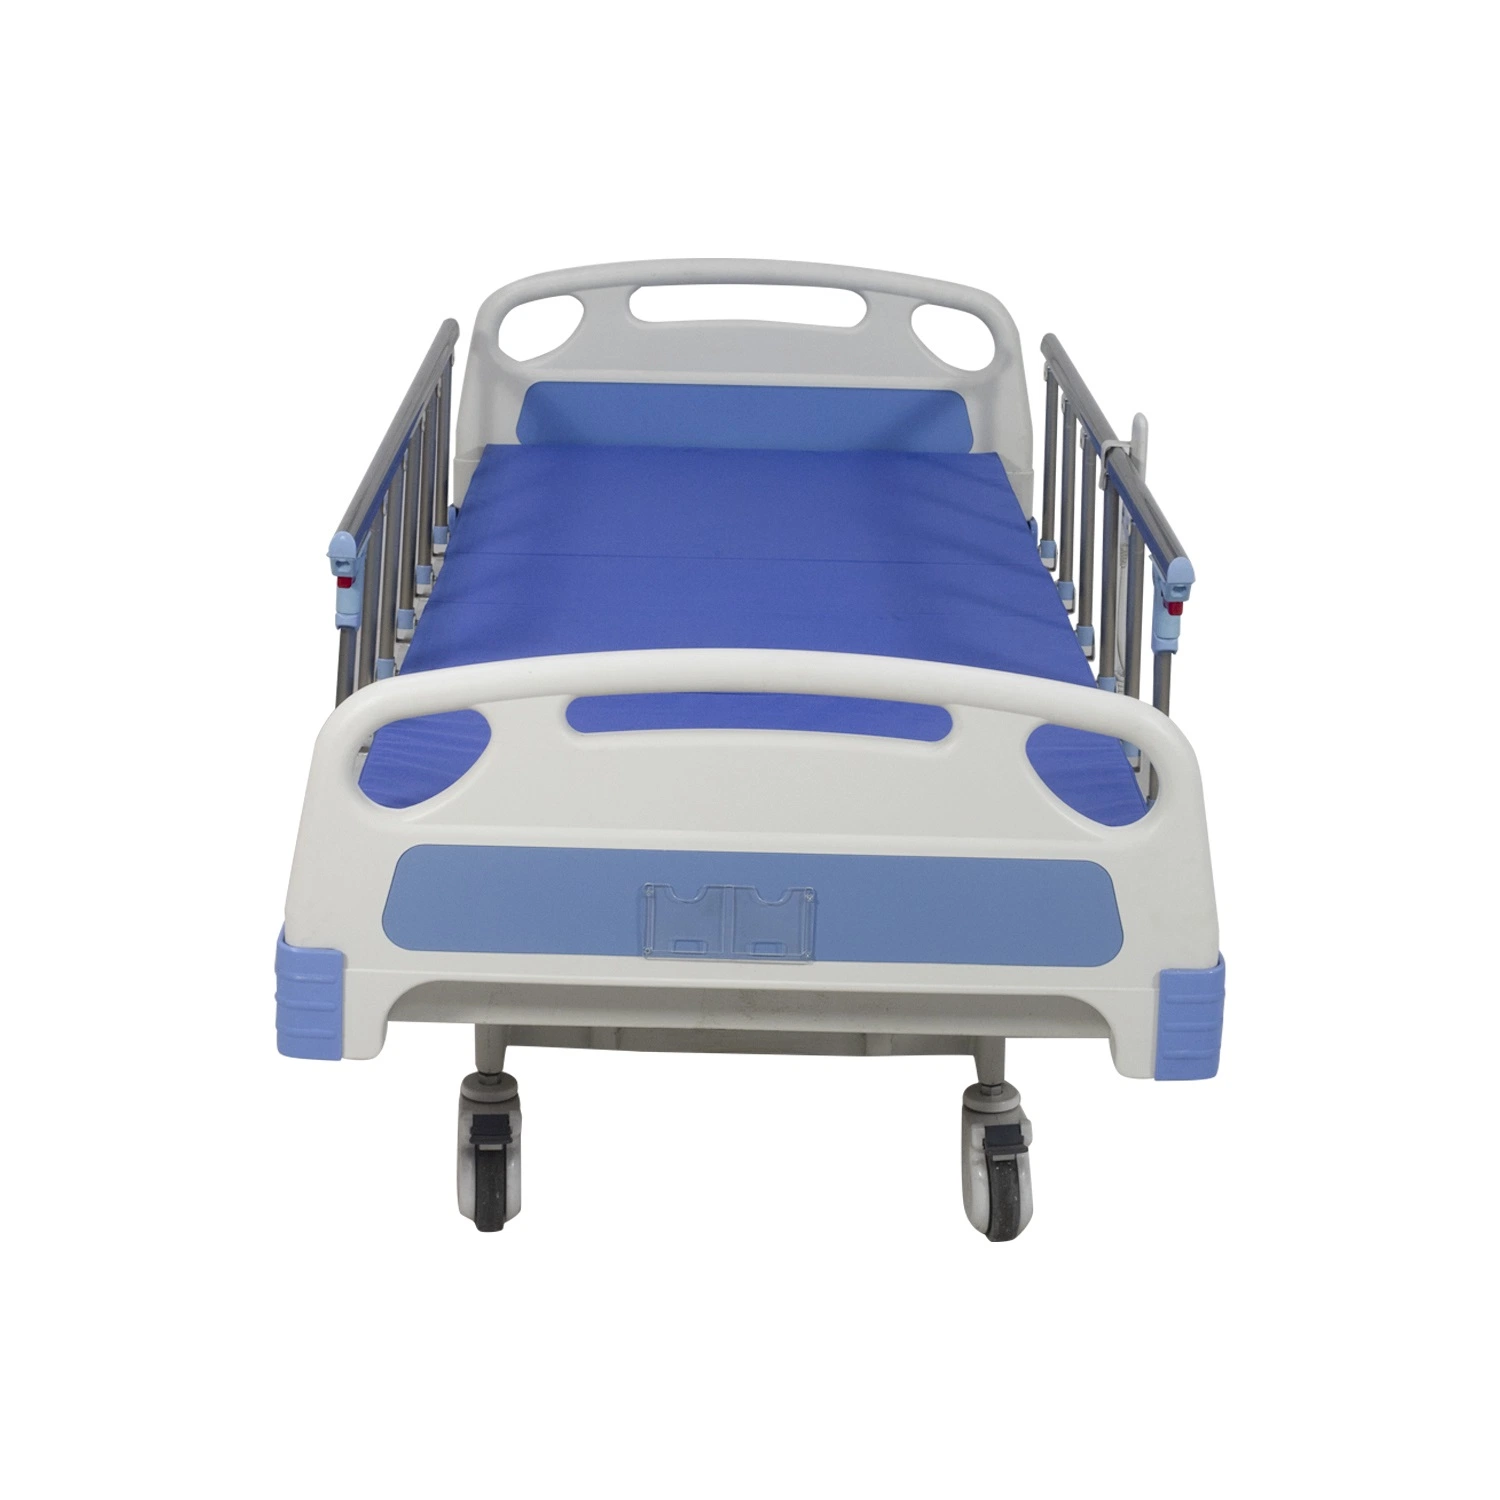 5-Función Rh-Ad428 Hospital motorizado cama de acero eléctrico ajustable de postura de la cama de cuidados con barandas de aluminio